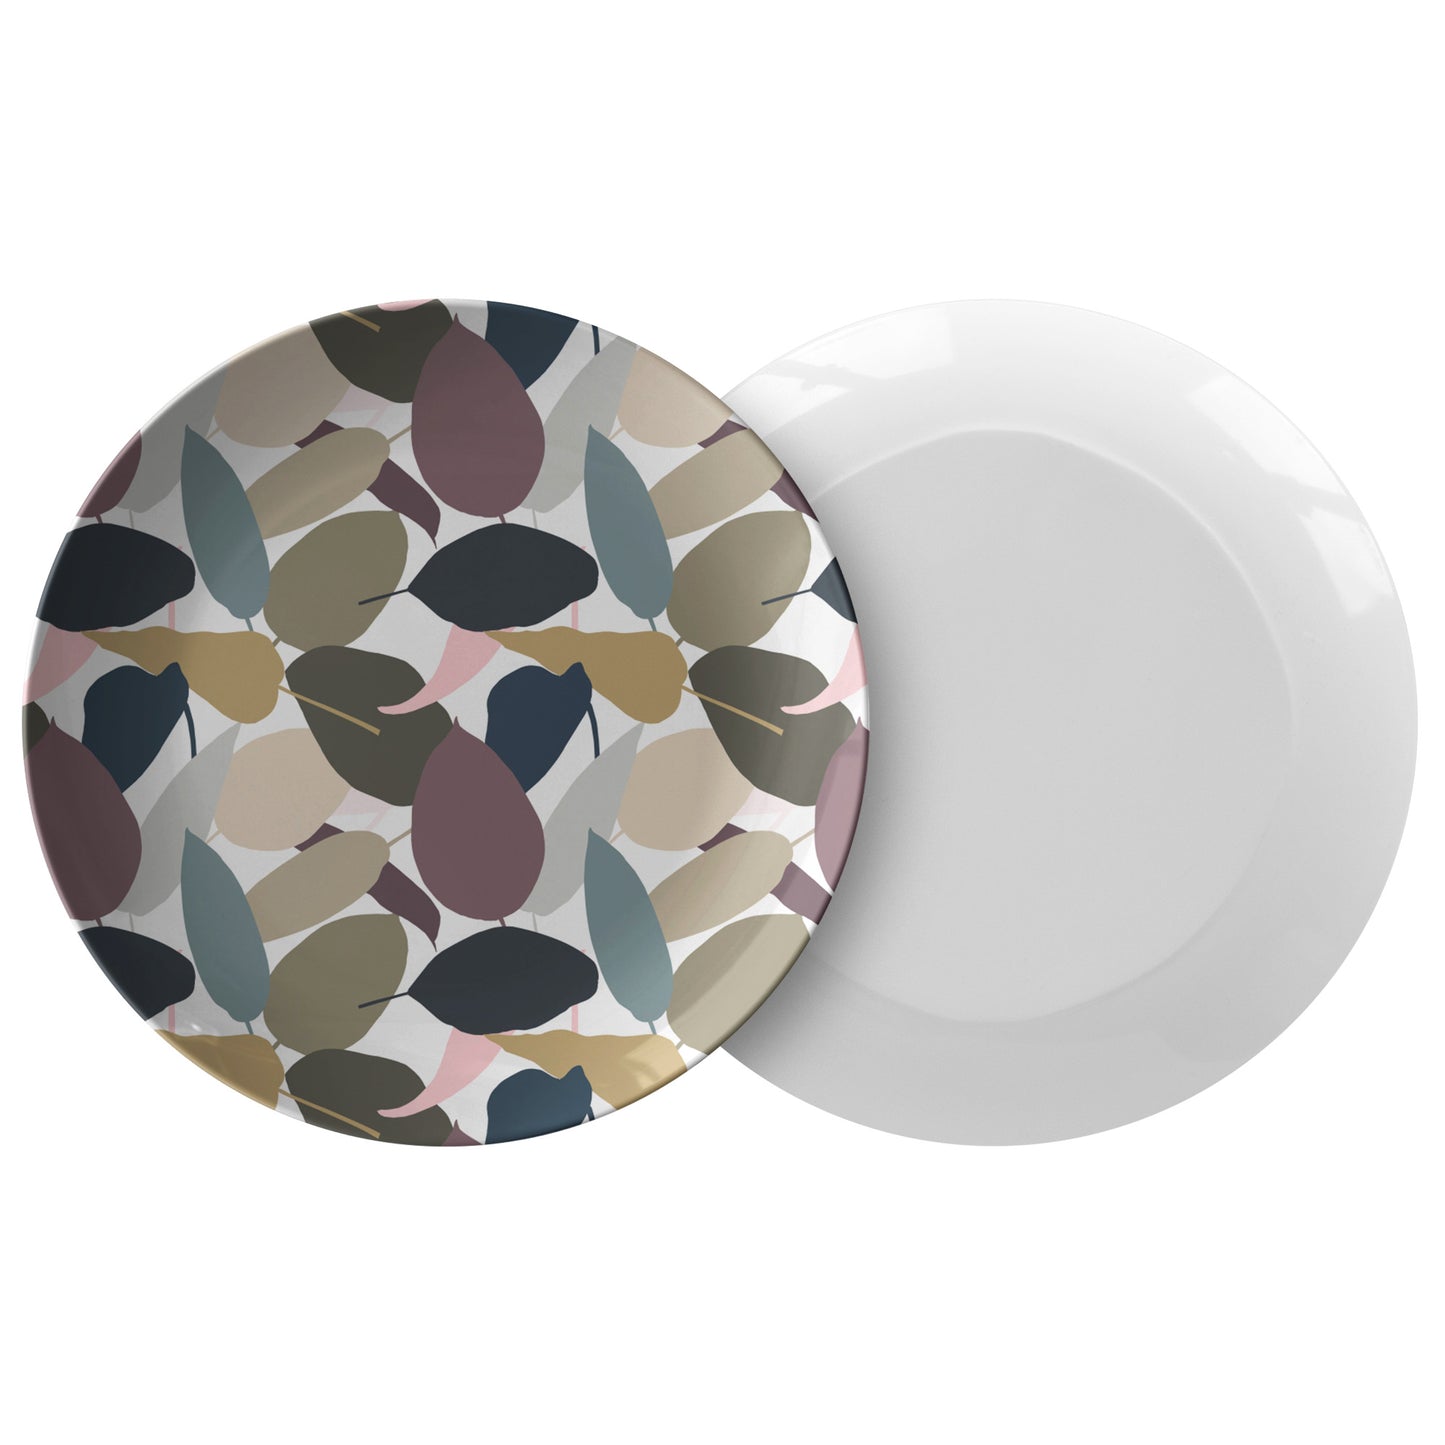 Modern Solid Leaf Plates, Set of 4, Earth Tones, Luxury Plastic